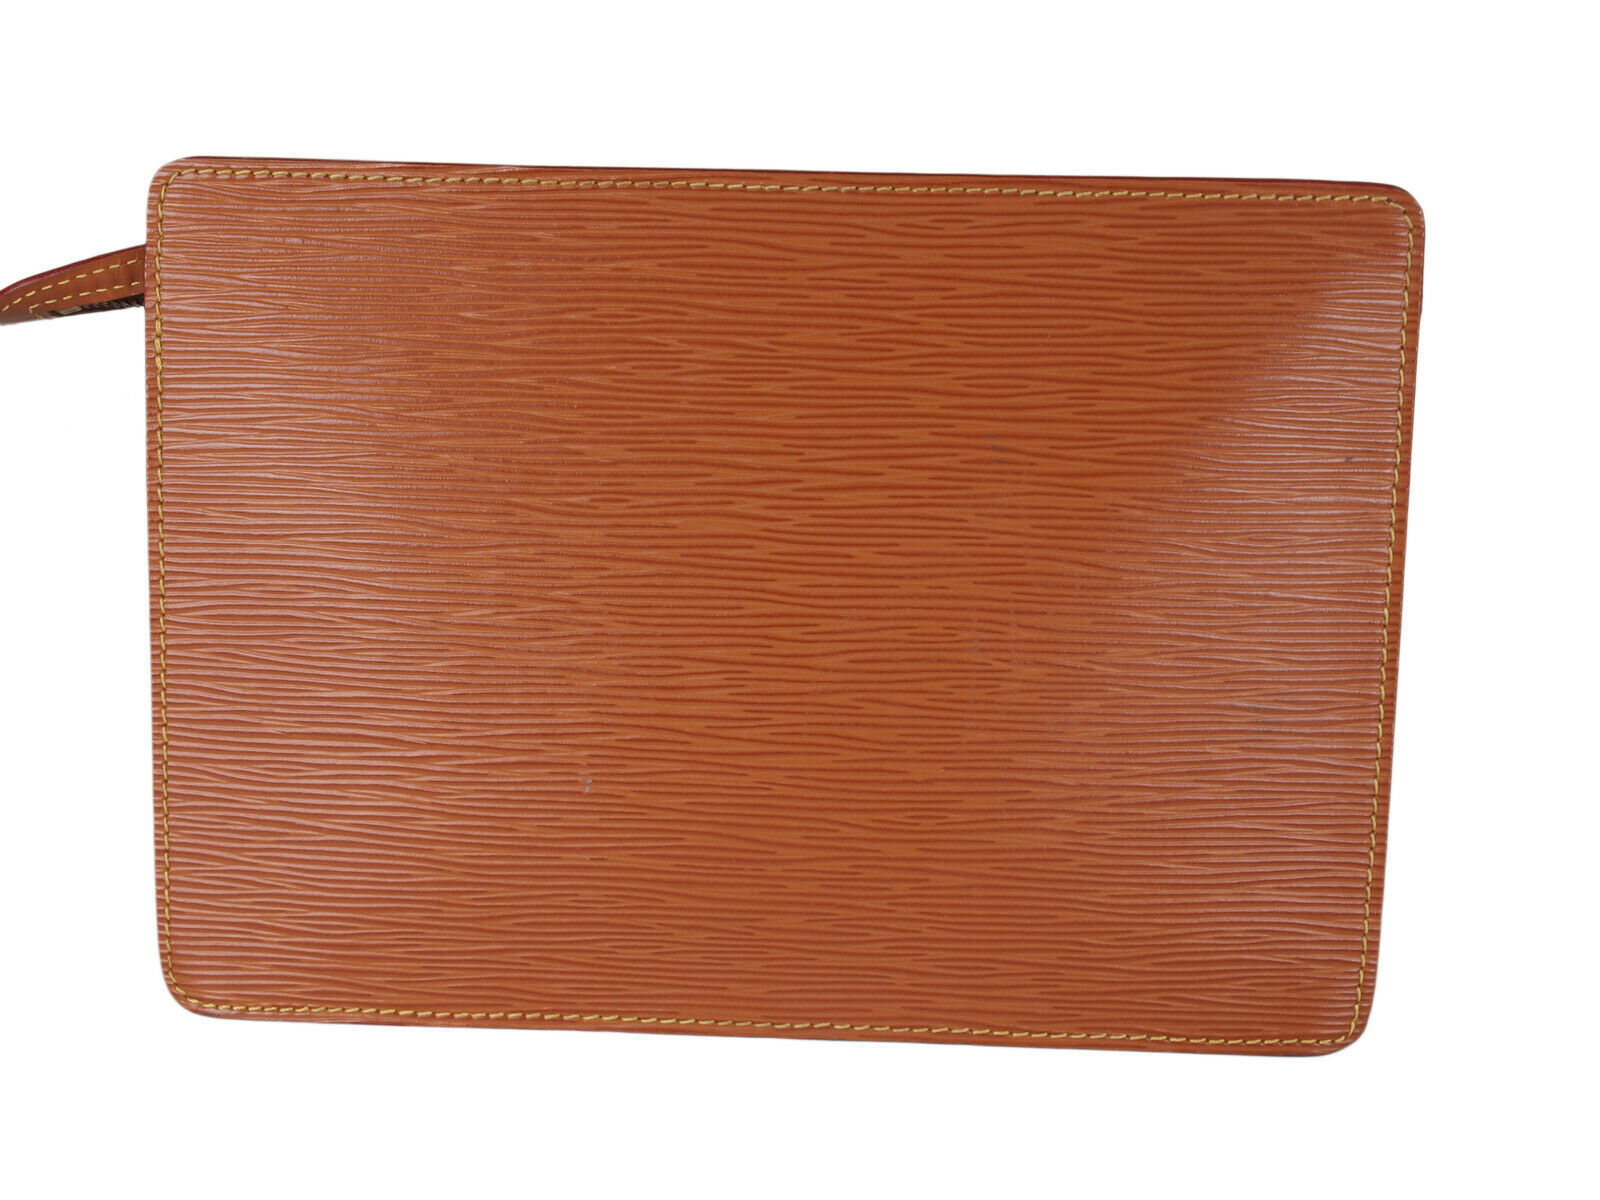 LOUIS VUITTON Pochette Homme Epi Leather Brown Clutch Bag LP3095 - Women&#39;s Bags & Handbags